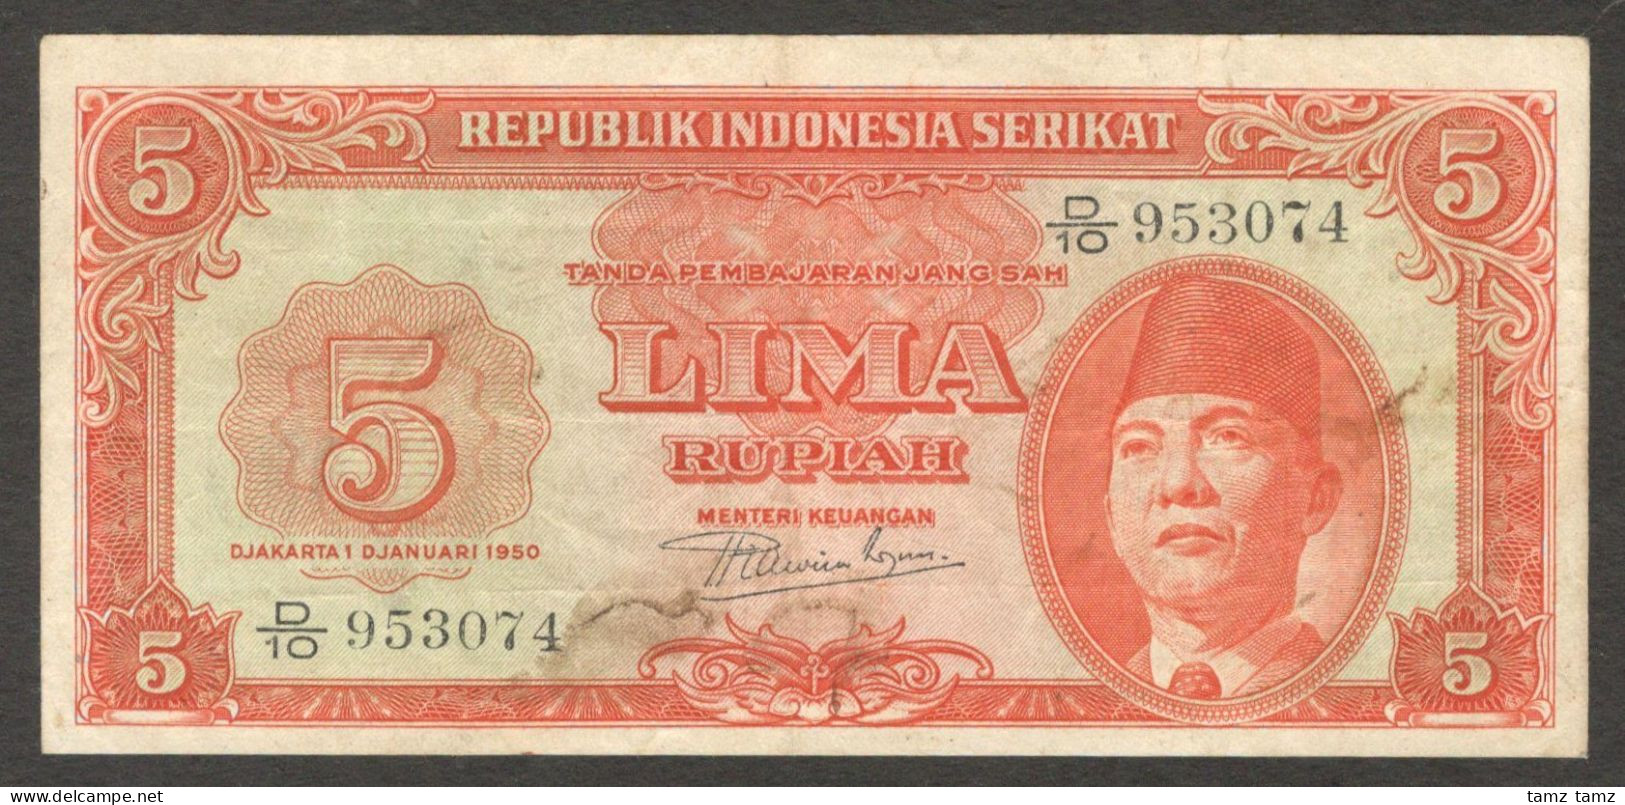 Republik Indonesia Serikat 5 Rupiah President Soekarno P-36 1950 VF - Indonesia